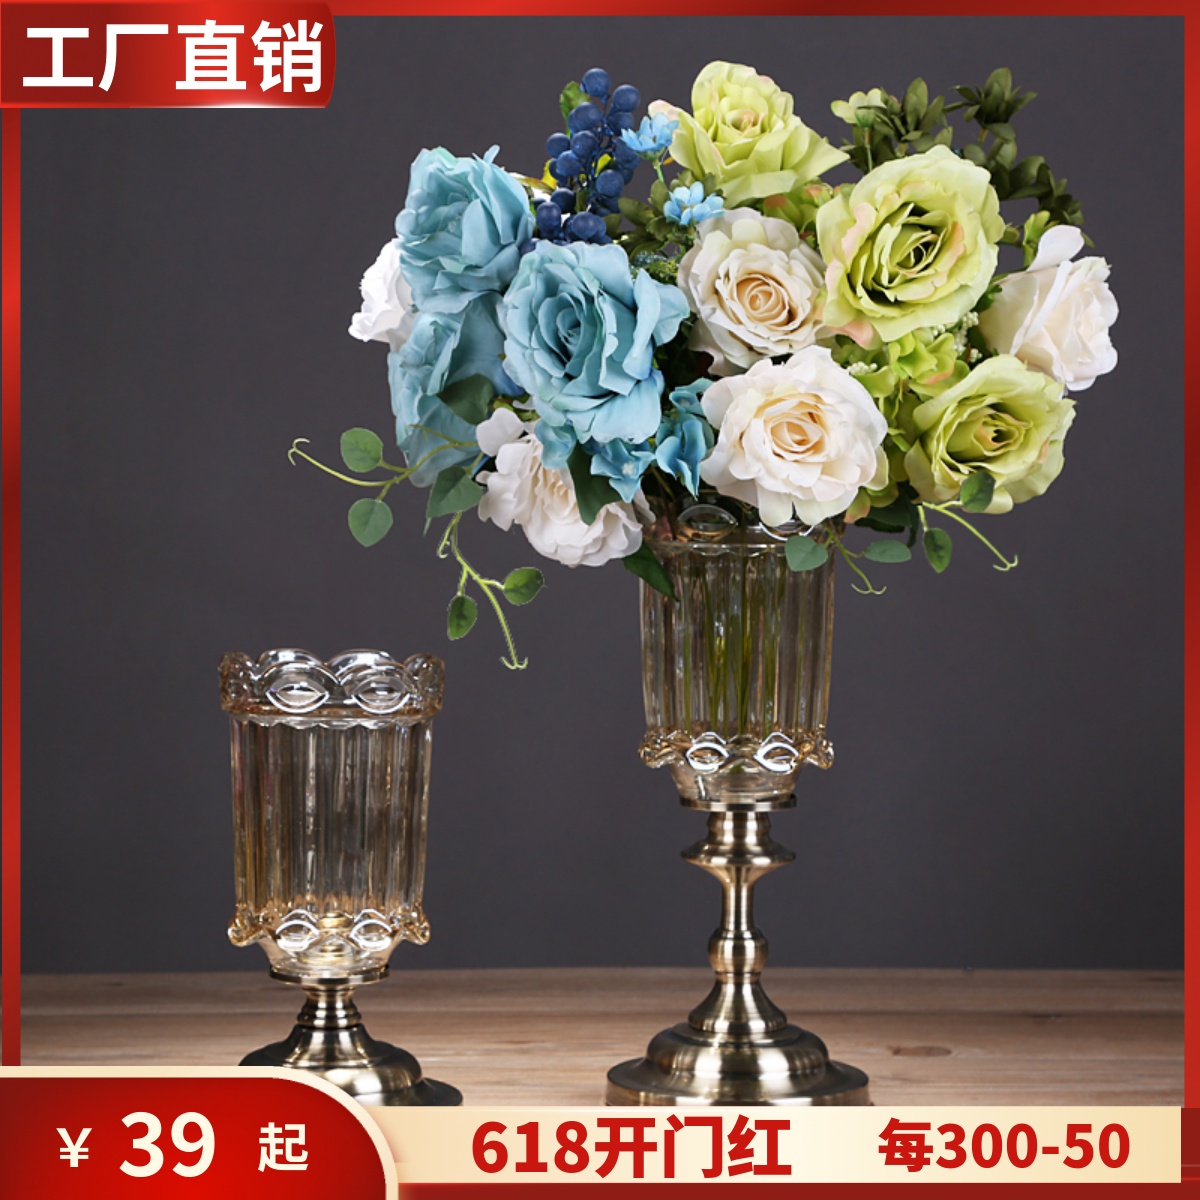 欧式轻奢水晶玻璃花瓶现代创意客厅电视柜餐桌仿真花插花装饰摆件